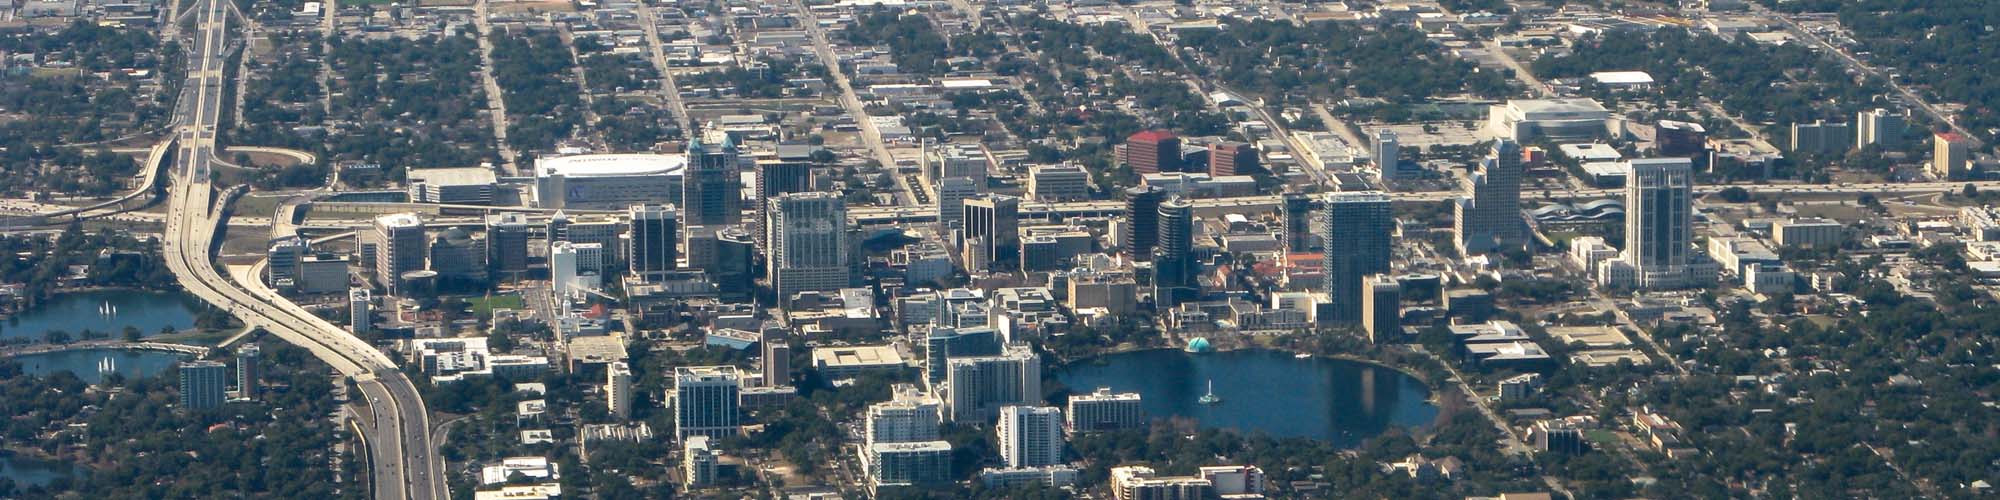 City of Orlando Florida United States